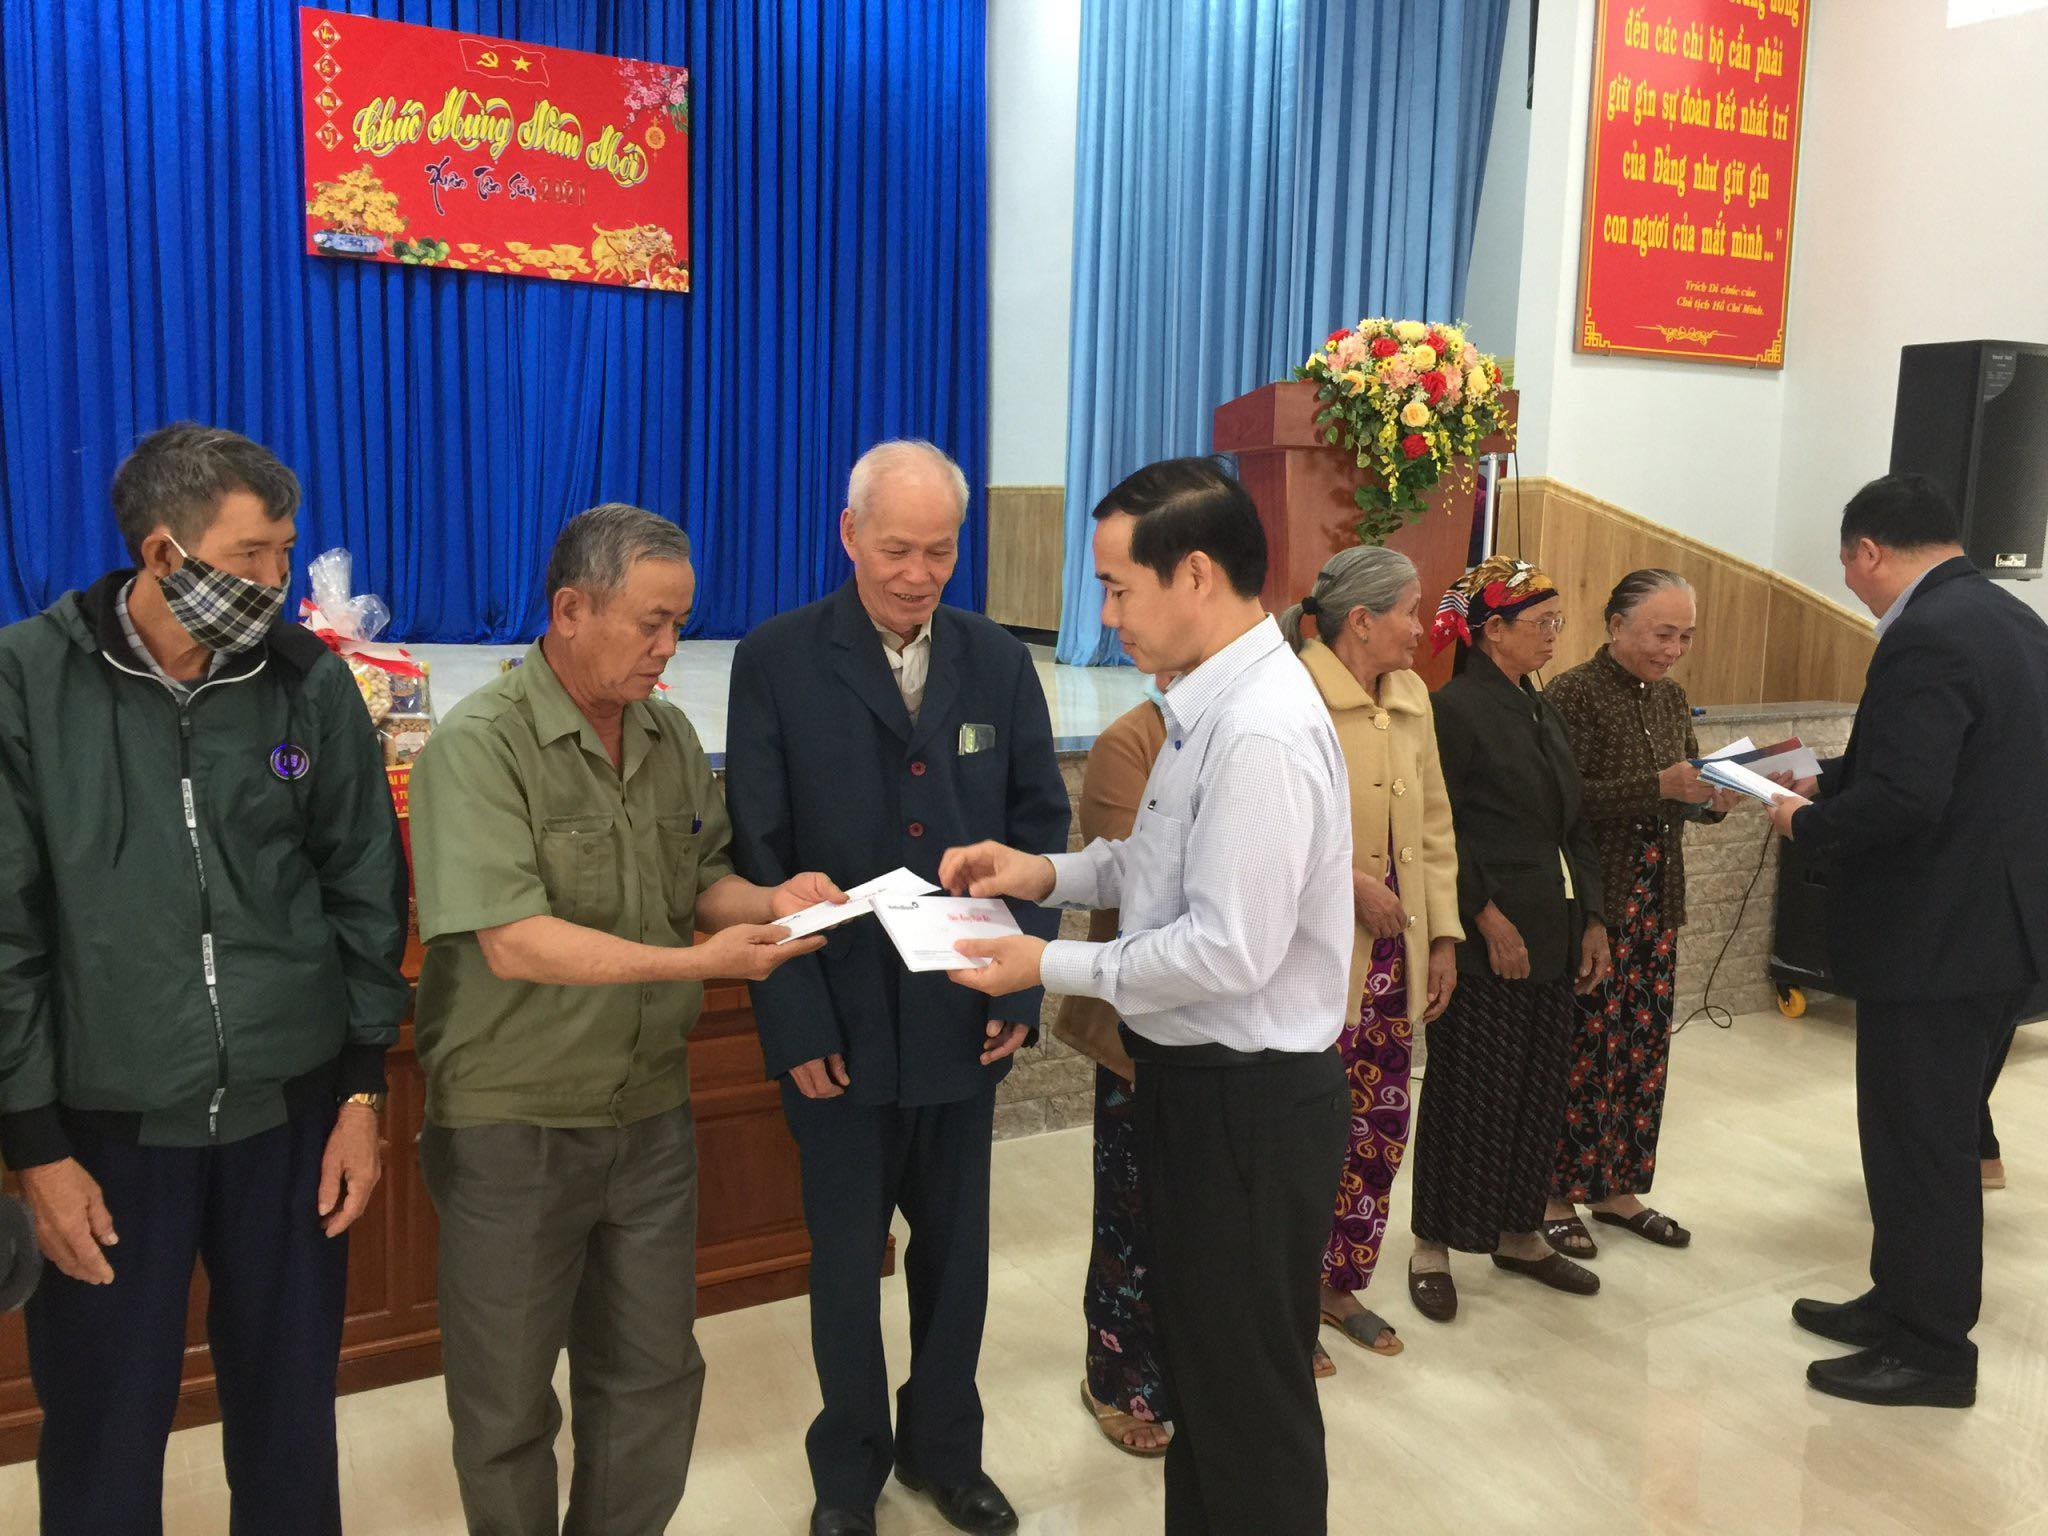 Đồng chí Nguyễn Thái Học, Phó trưởng Ban Nội chính Trung ương tặng quà cho các gia đình chính sách tại huyện miền núi Sông Hinh